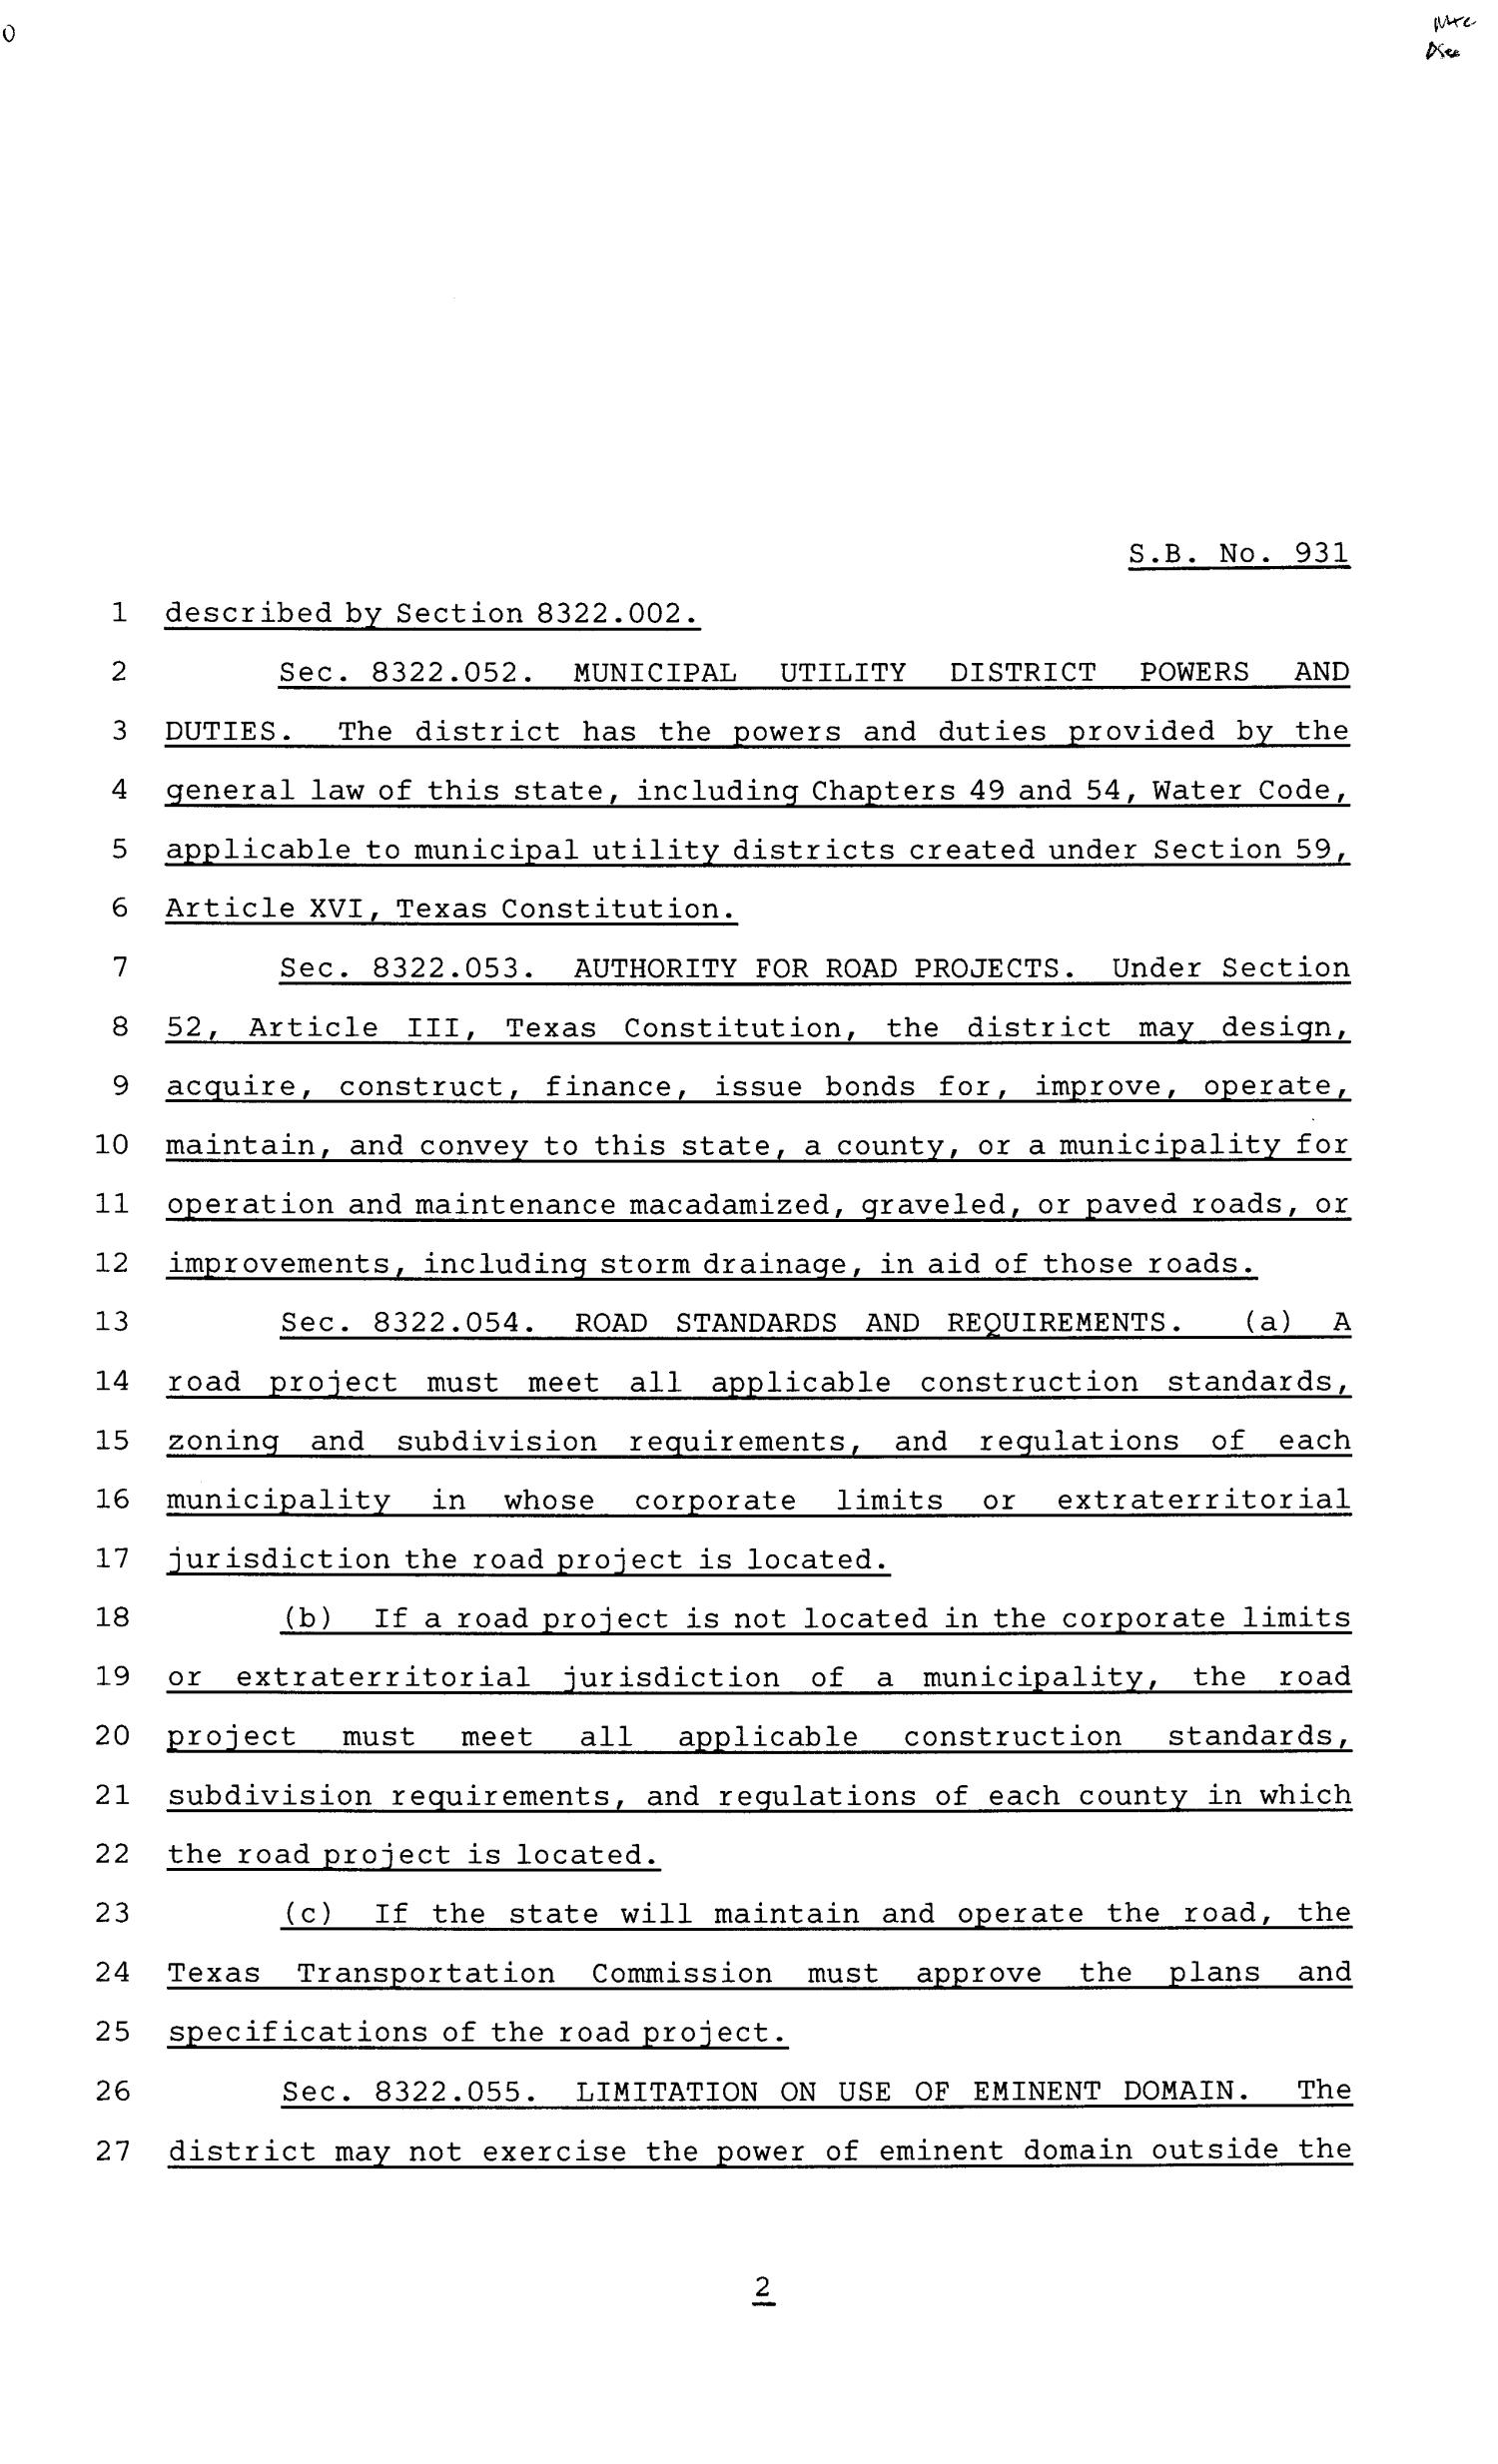 81st Texas Legislature, Senate Bill 931, Chapter 210
                                                
                                                    [Sequence #]: 2 of 5
                                                